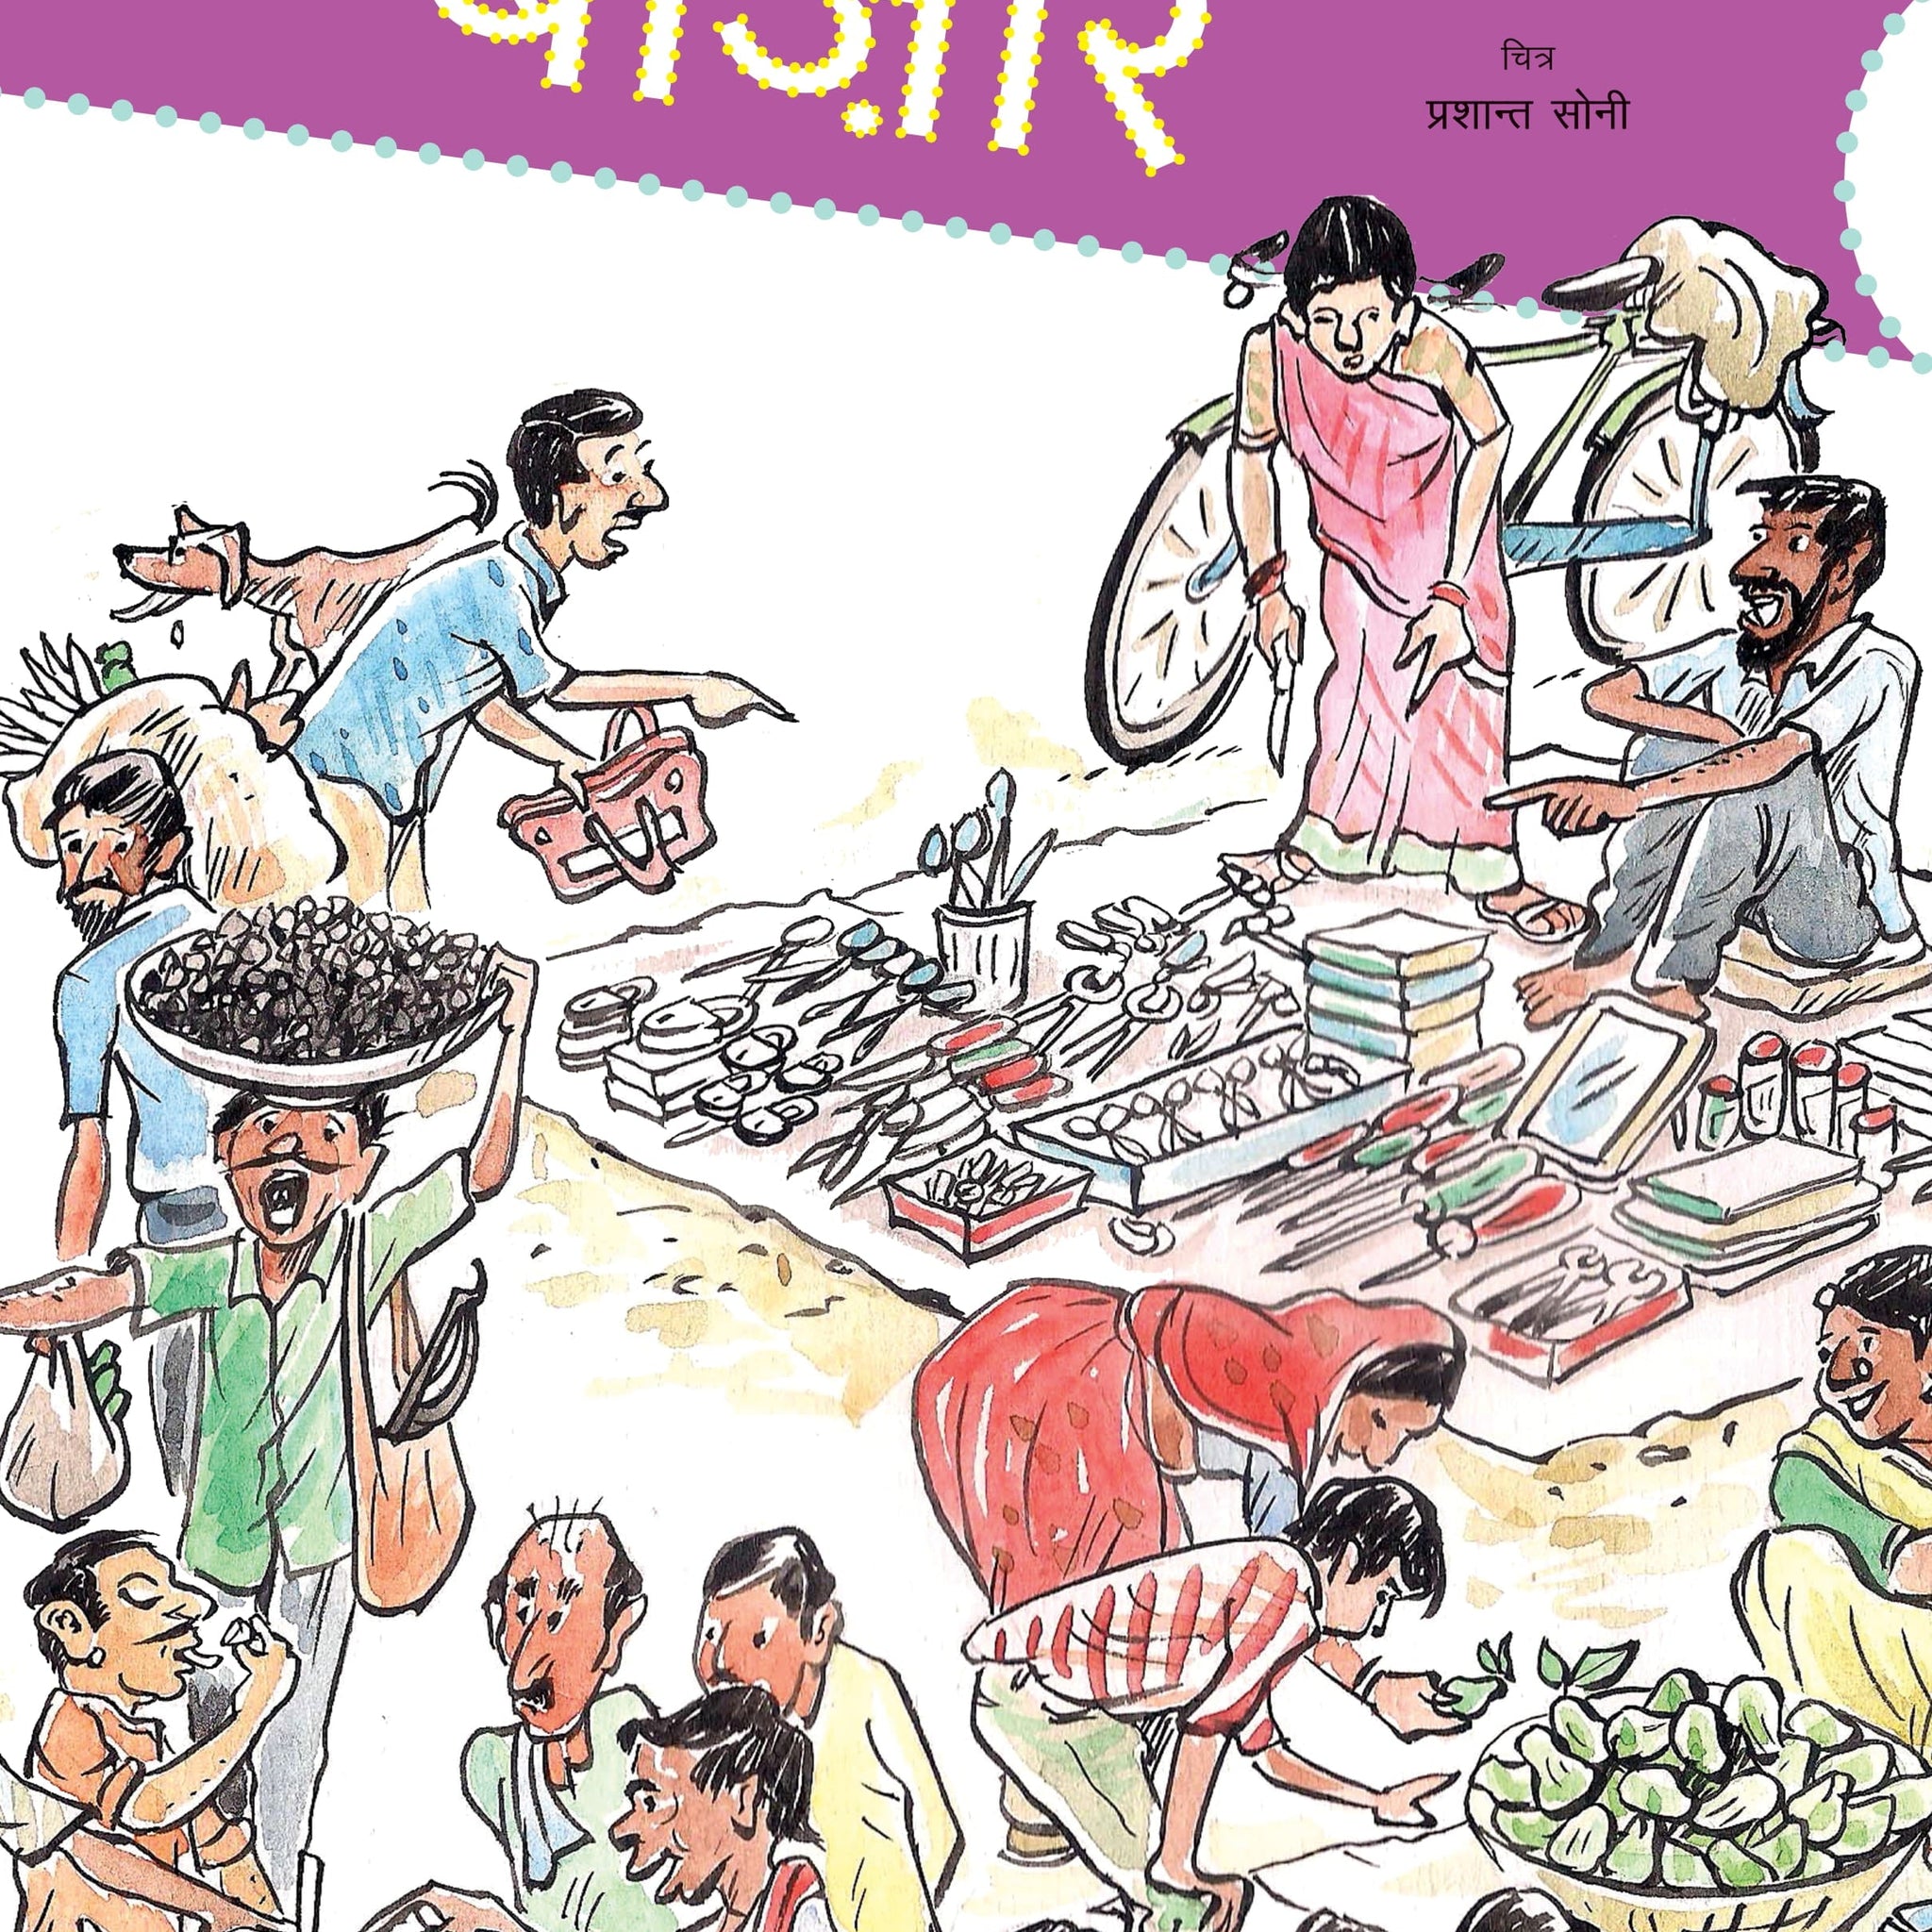 Bazar (Big Book)